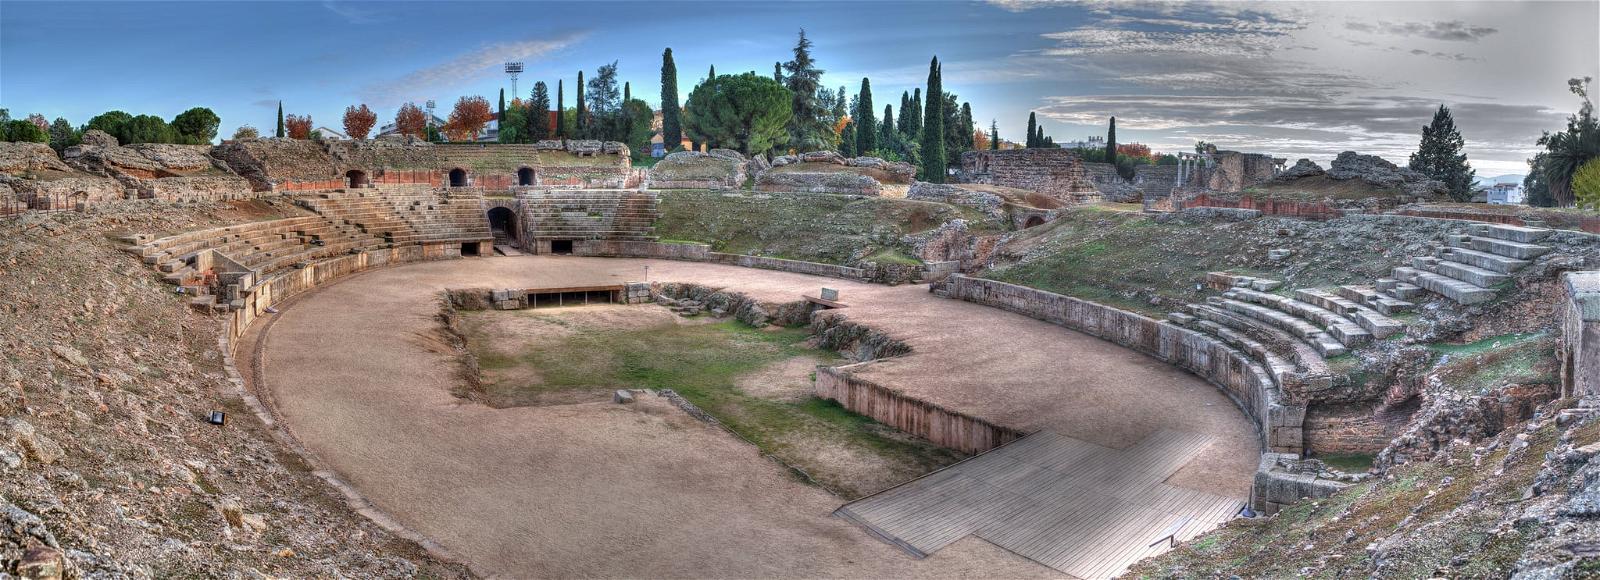 Anfiteatro Romano 의 이미지. romano